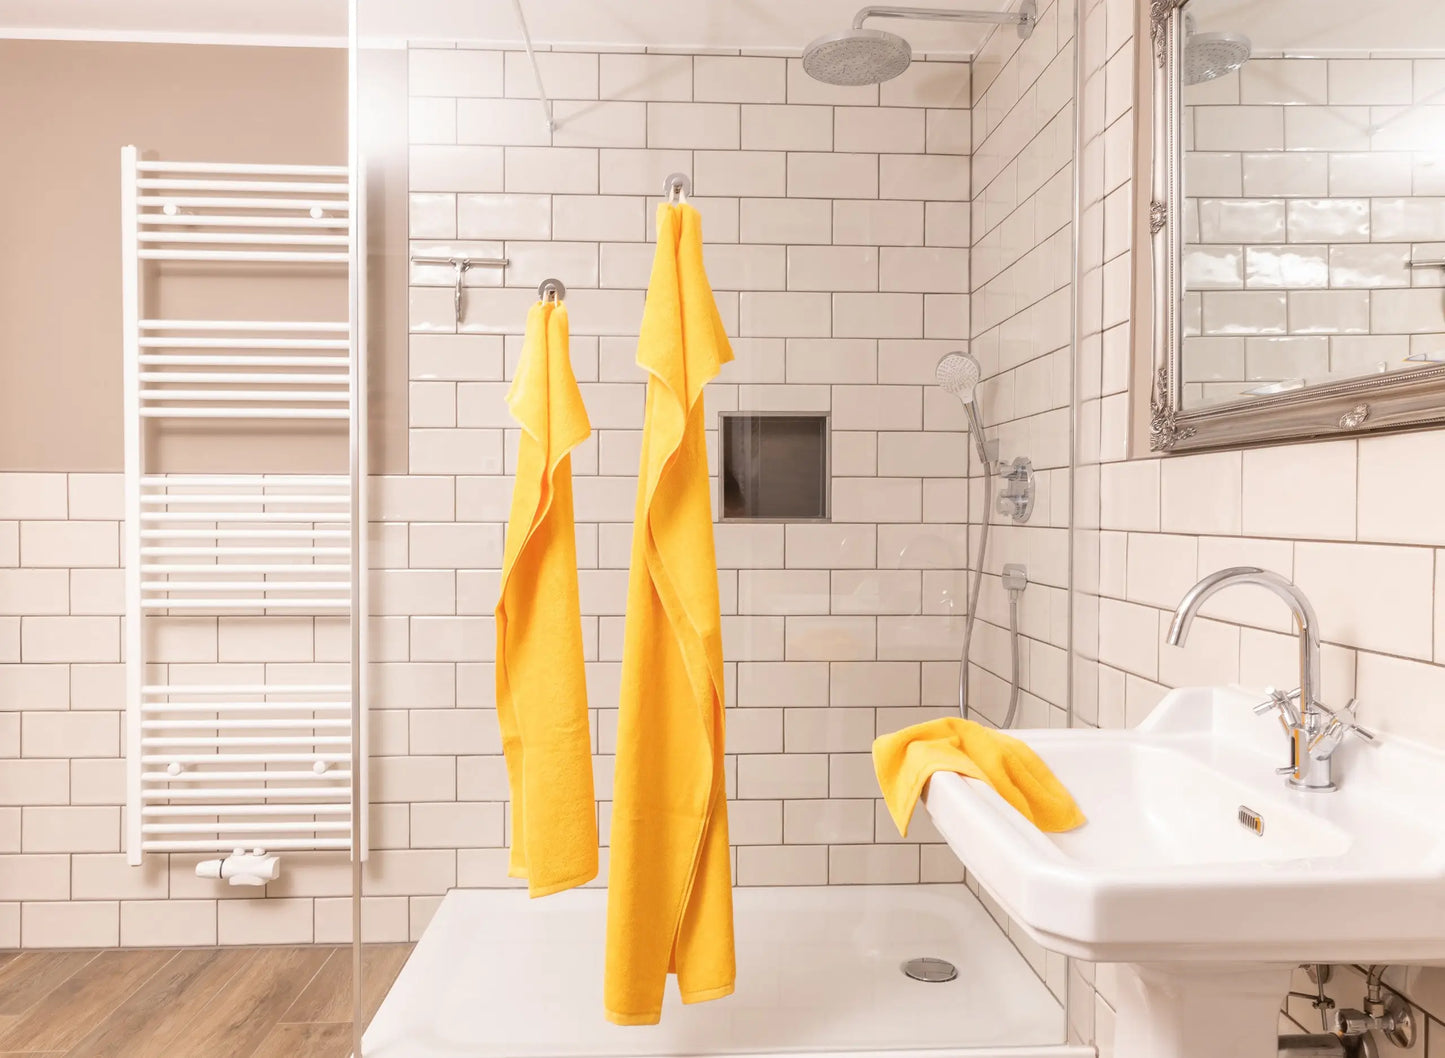 Handtuch Set Gelb im Badezimmer an der Dusche sehr schön.